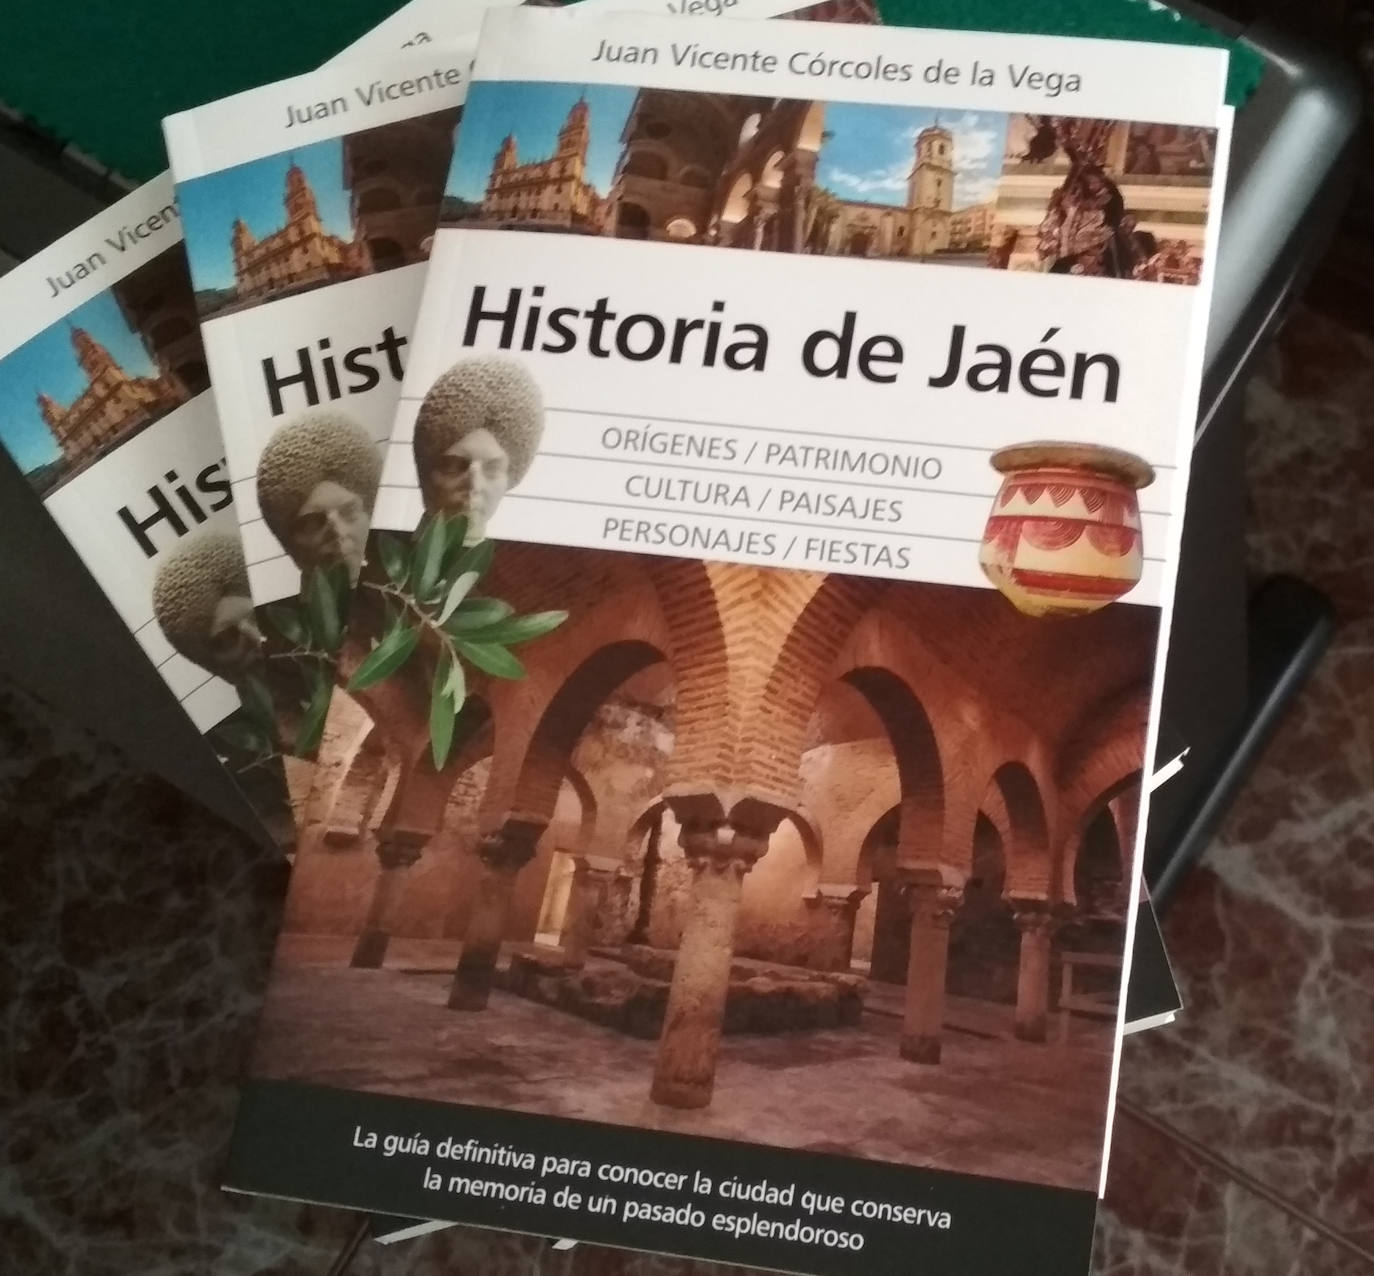 Un libro sobre Jaén de Juan Vicente Córcoles condensa su historia y su patrimonio 